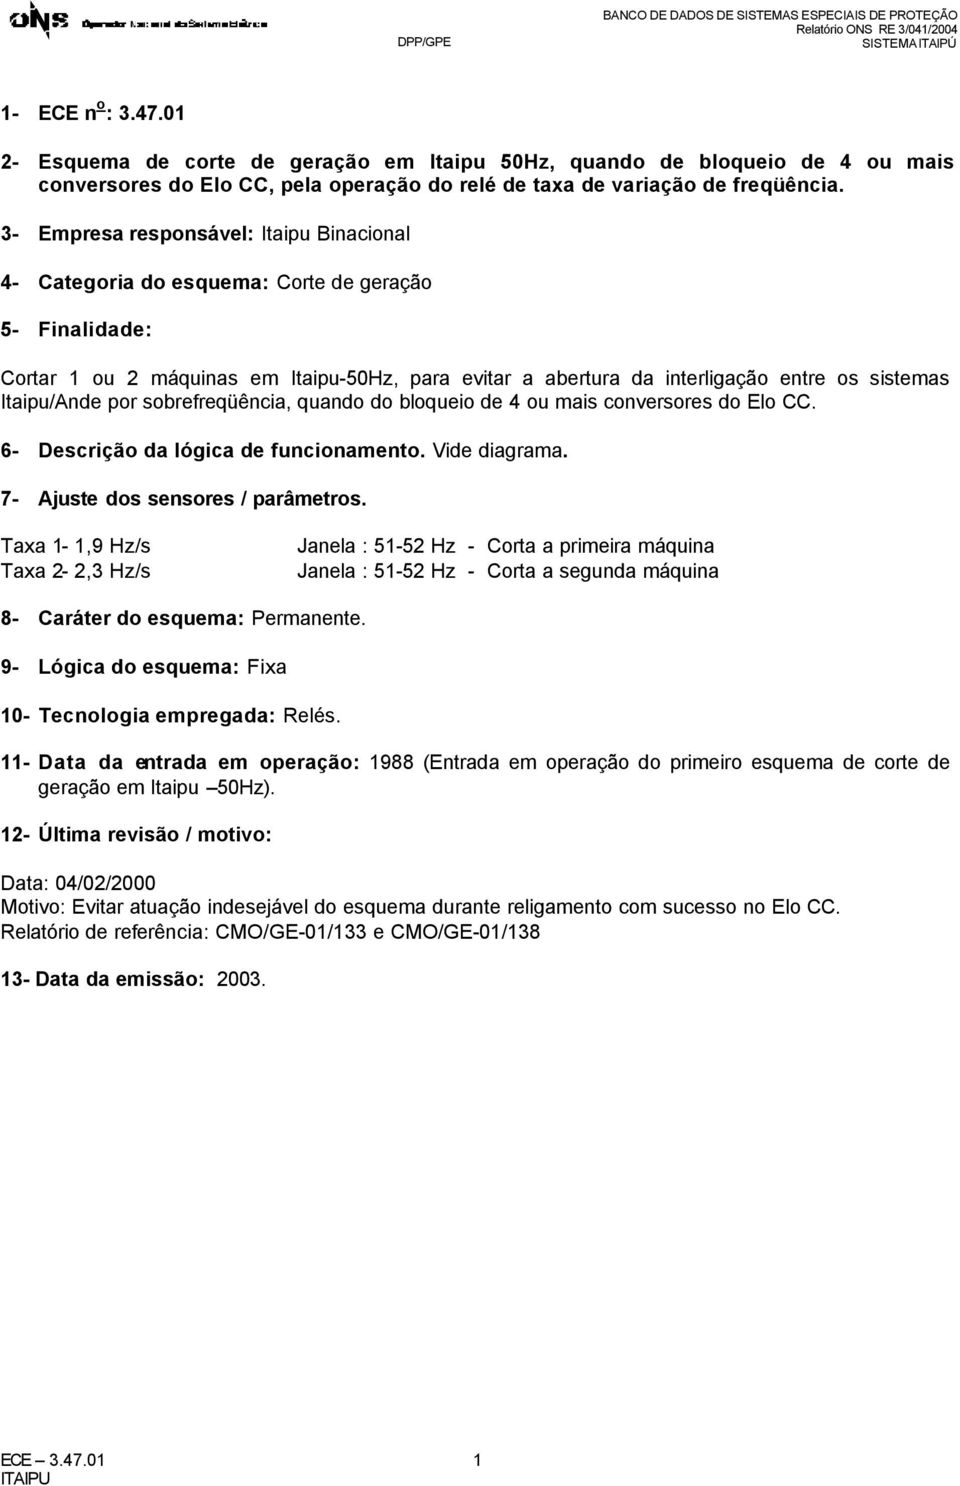 3- mpresa responsável: Itaipu Binacional 4- Categoria do esquema: Corte de geração 5- Finalidade: Cortar ou máquinas em Itaipu-50Hz, para evitar a abertura da interligação entre os sistemas